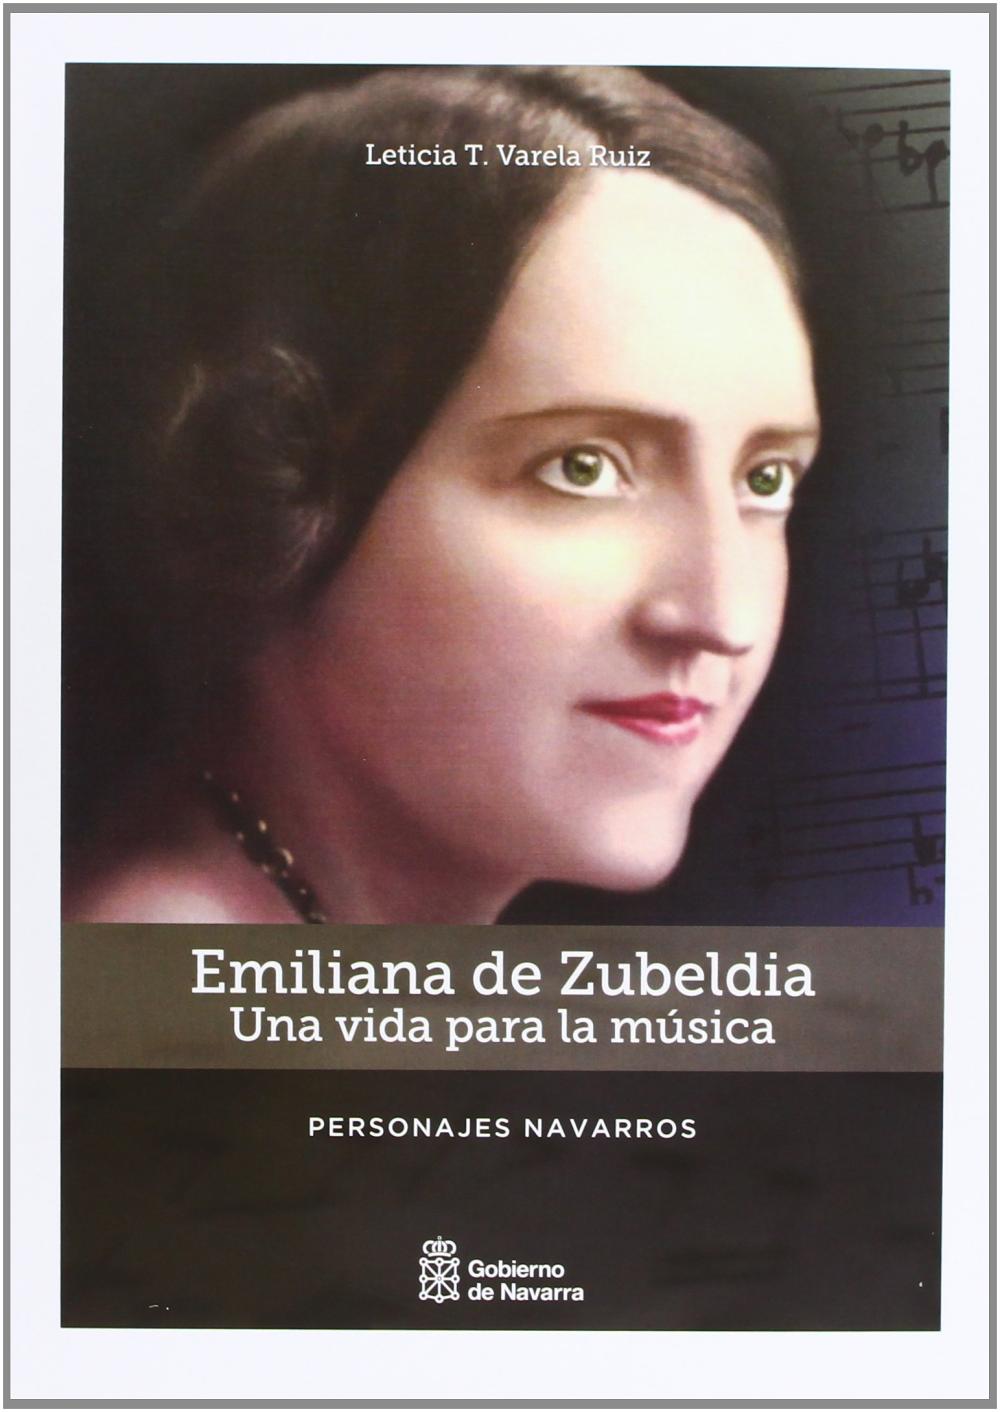 Emiliana de Zubeldia